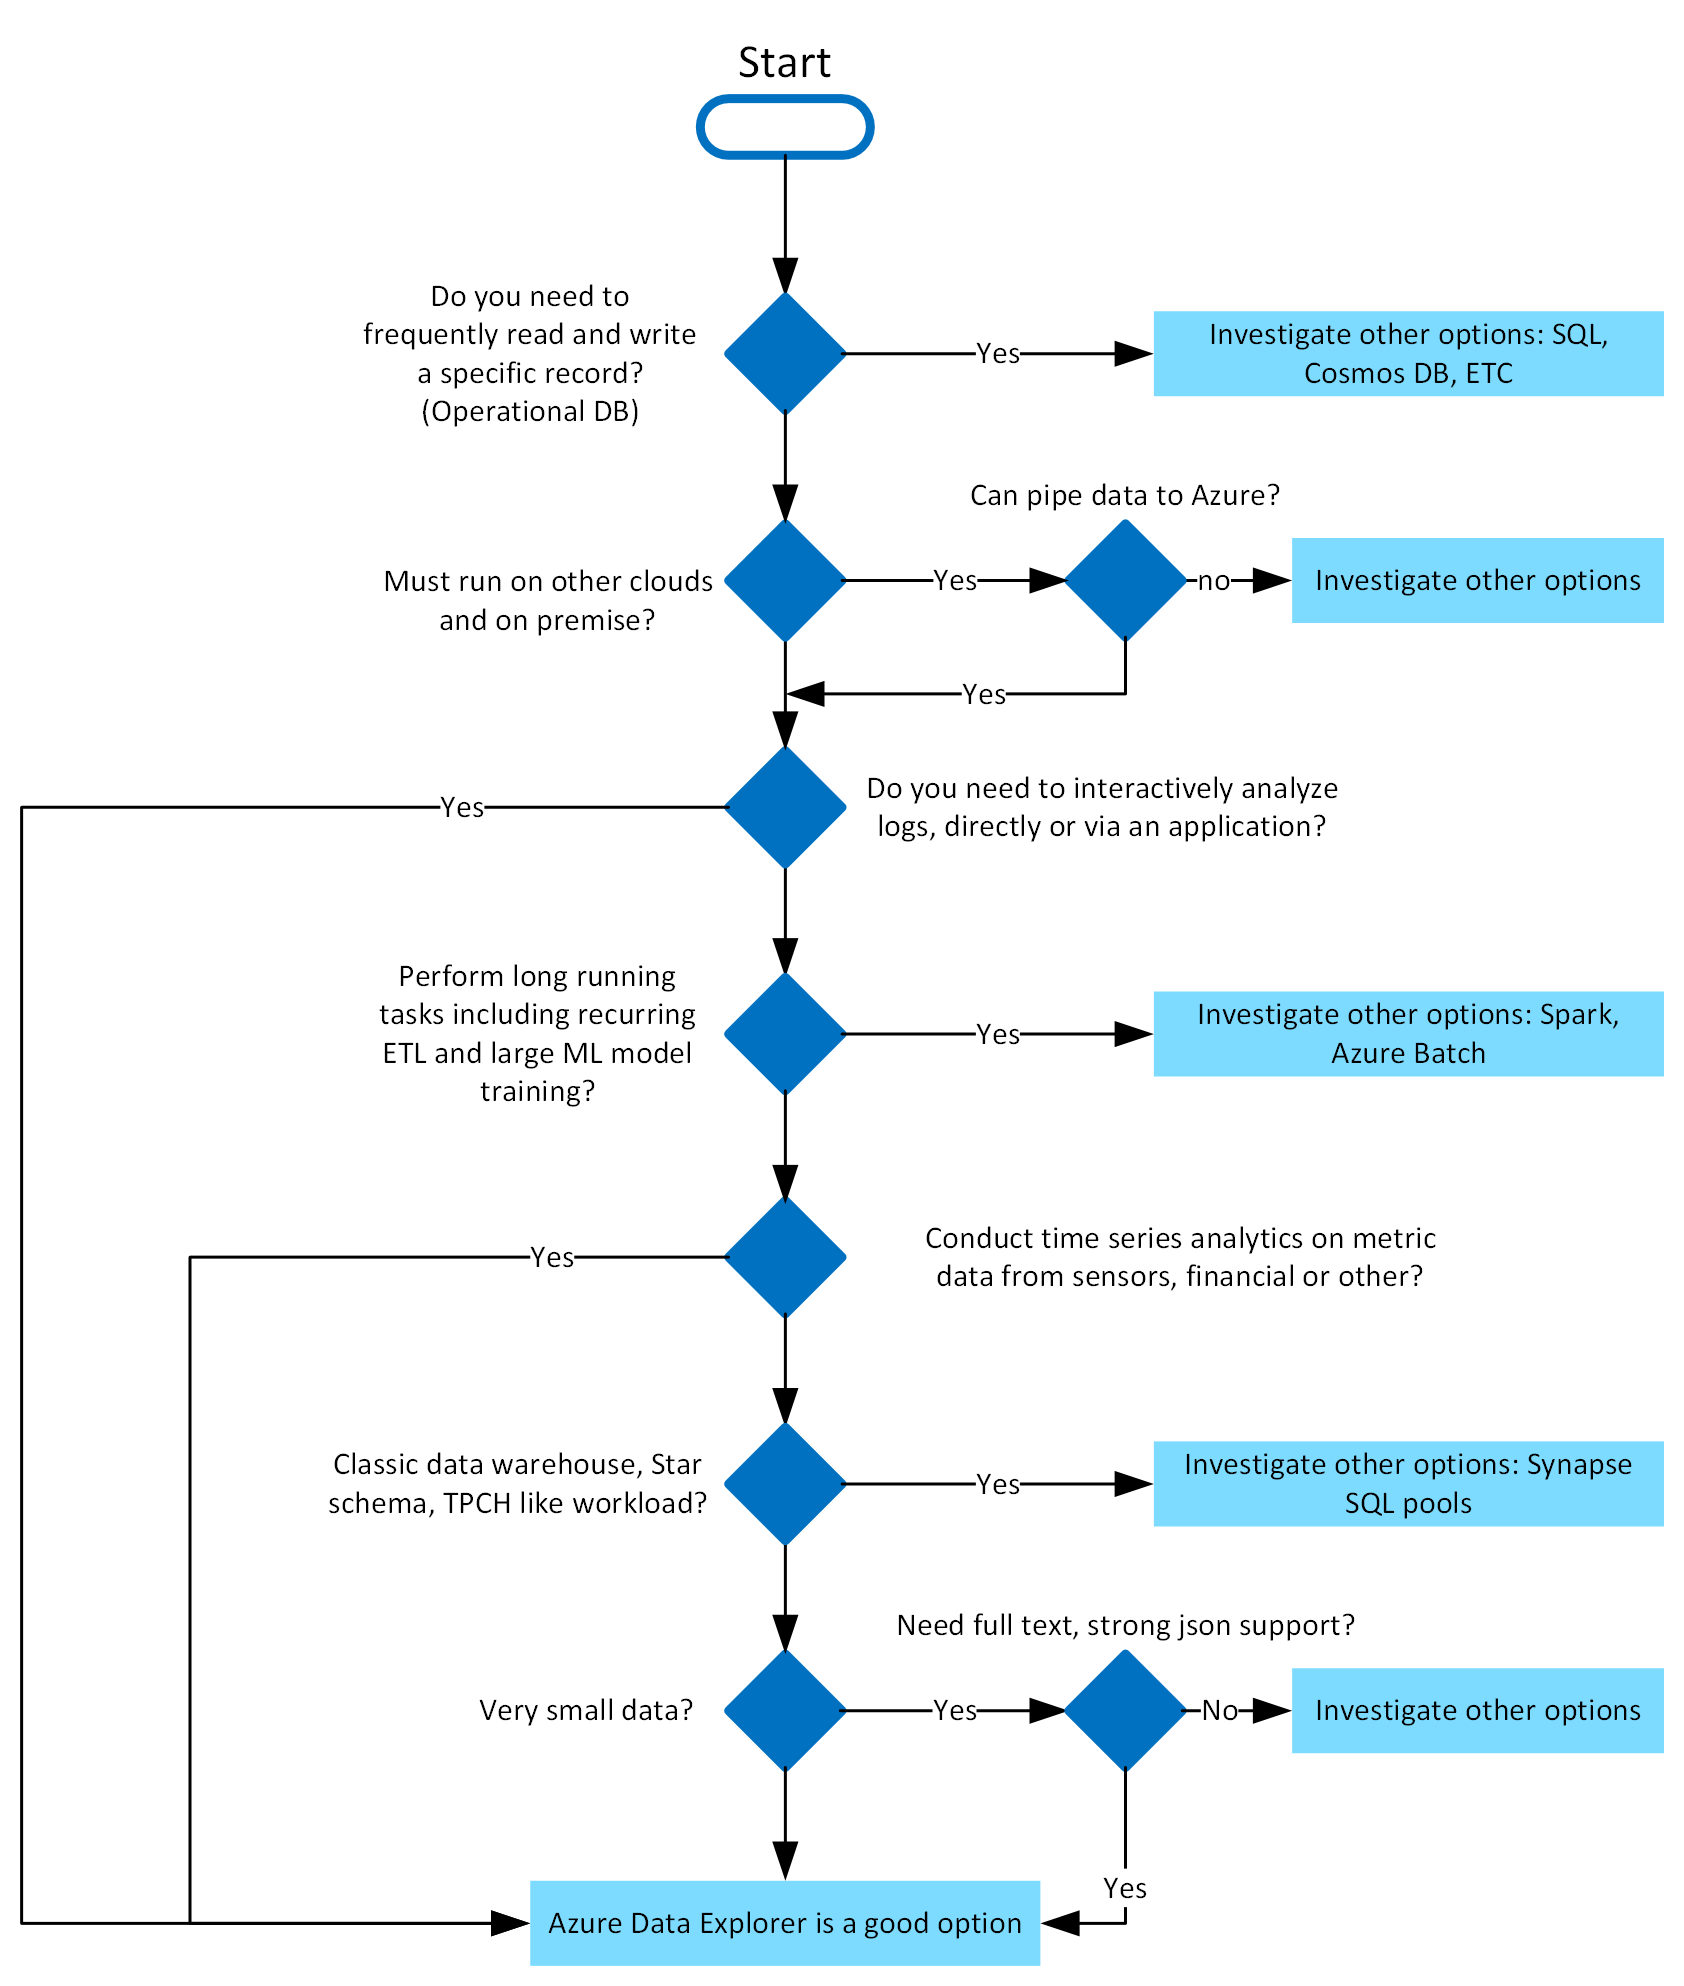 Den här bilden är en schematisk arbetsflödesbild av ett Beslutsträd för Azure Data Explorer.